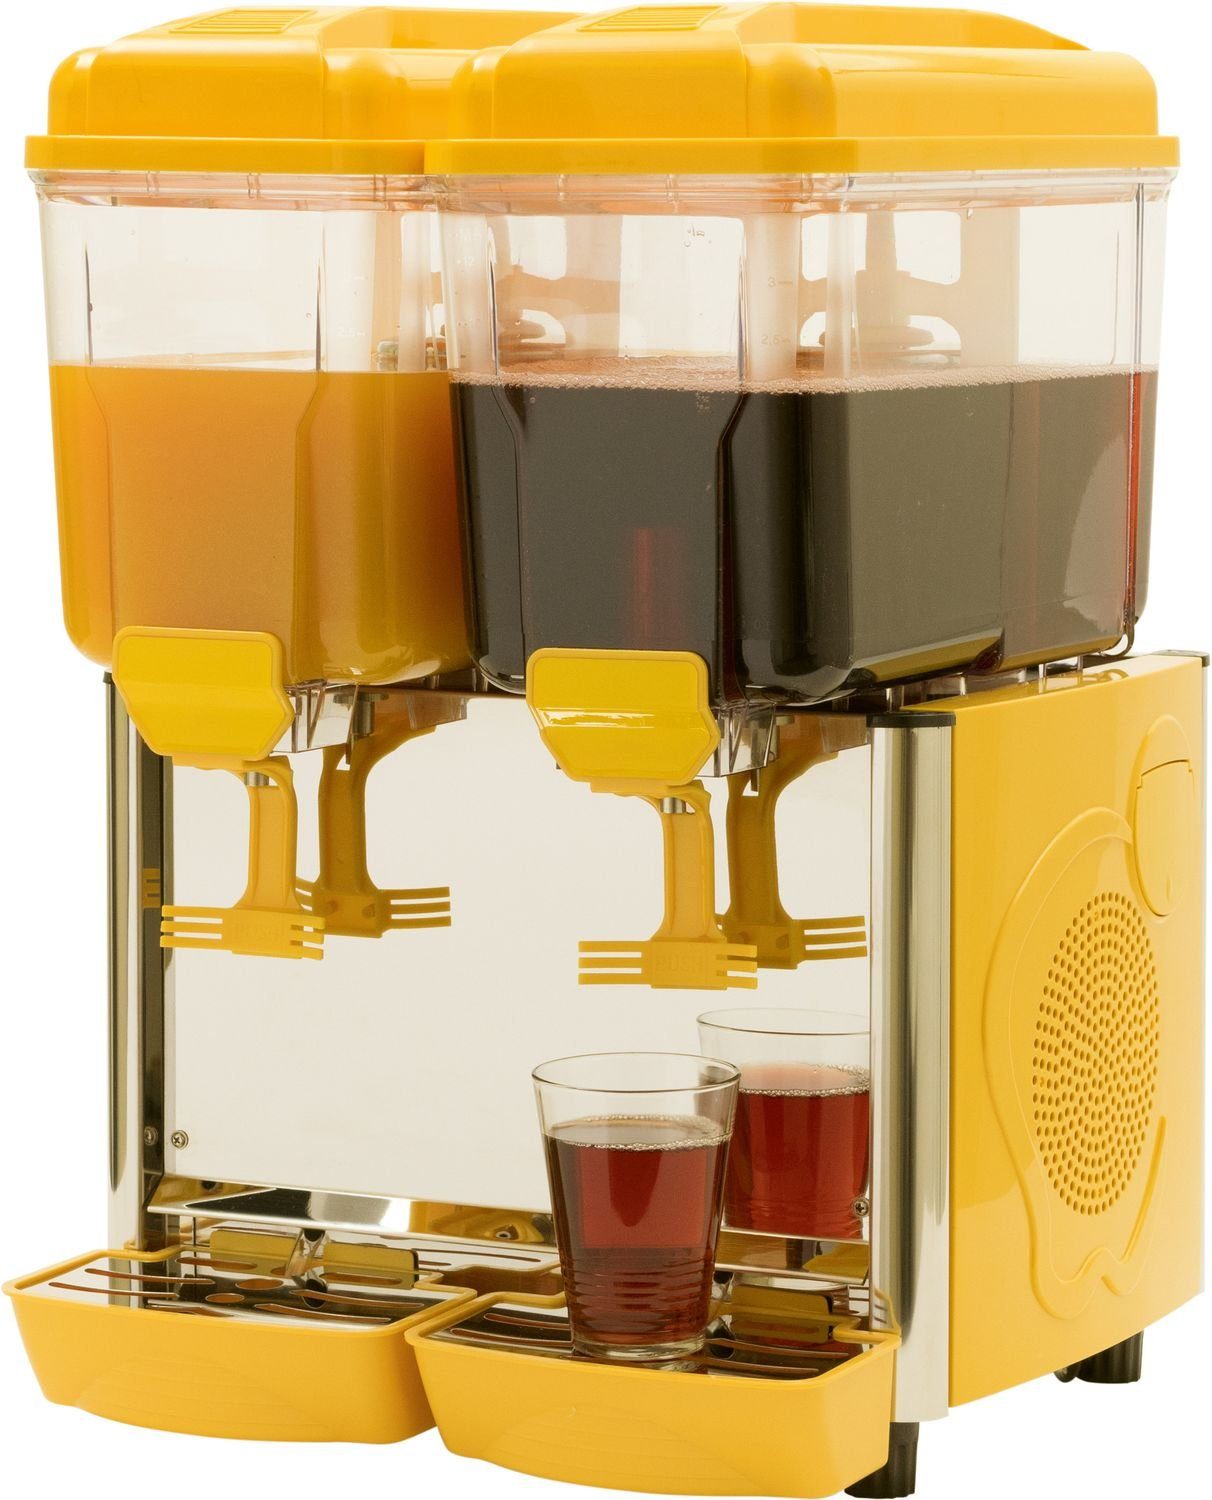 Saro Einkochautomat Getränkespender mit Kühlung, Saftspender, Kaltgetränke Dispenser, 2G gelb